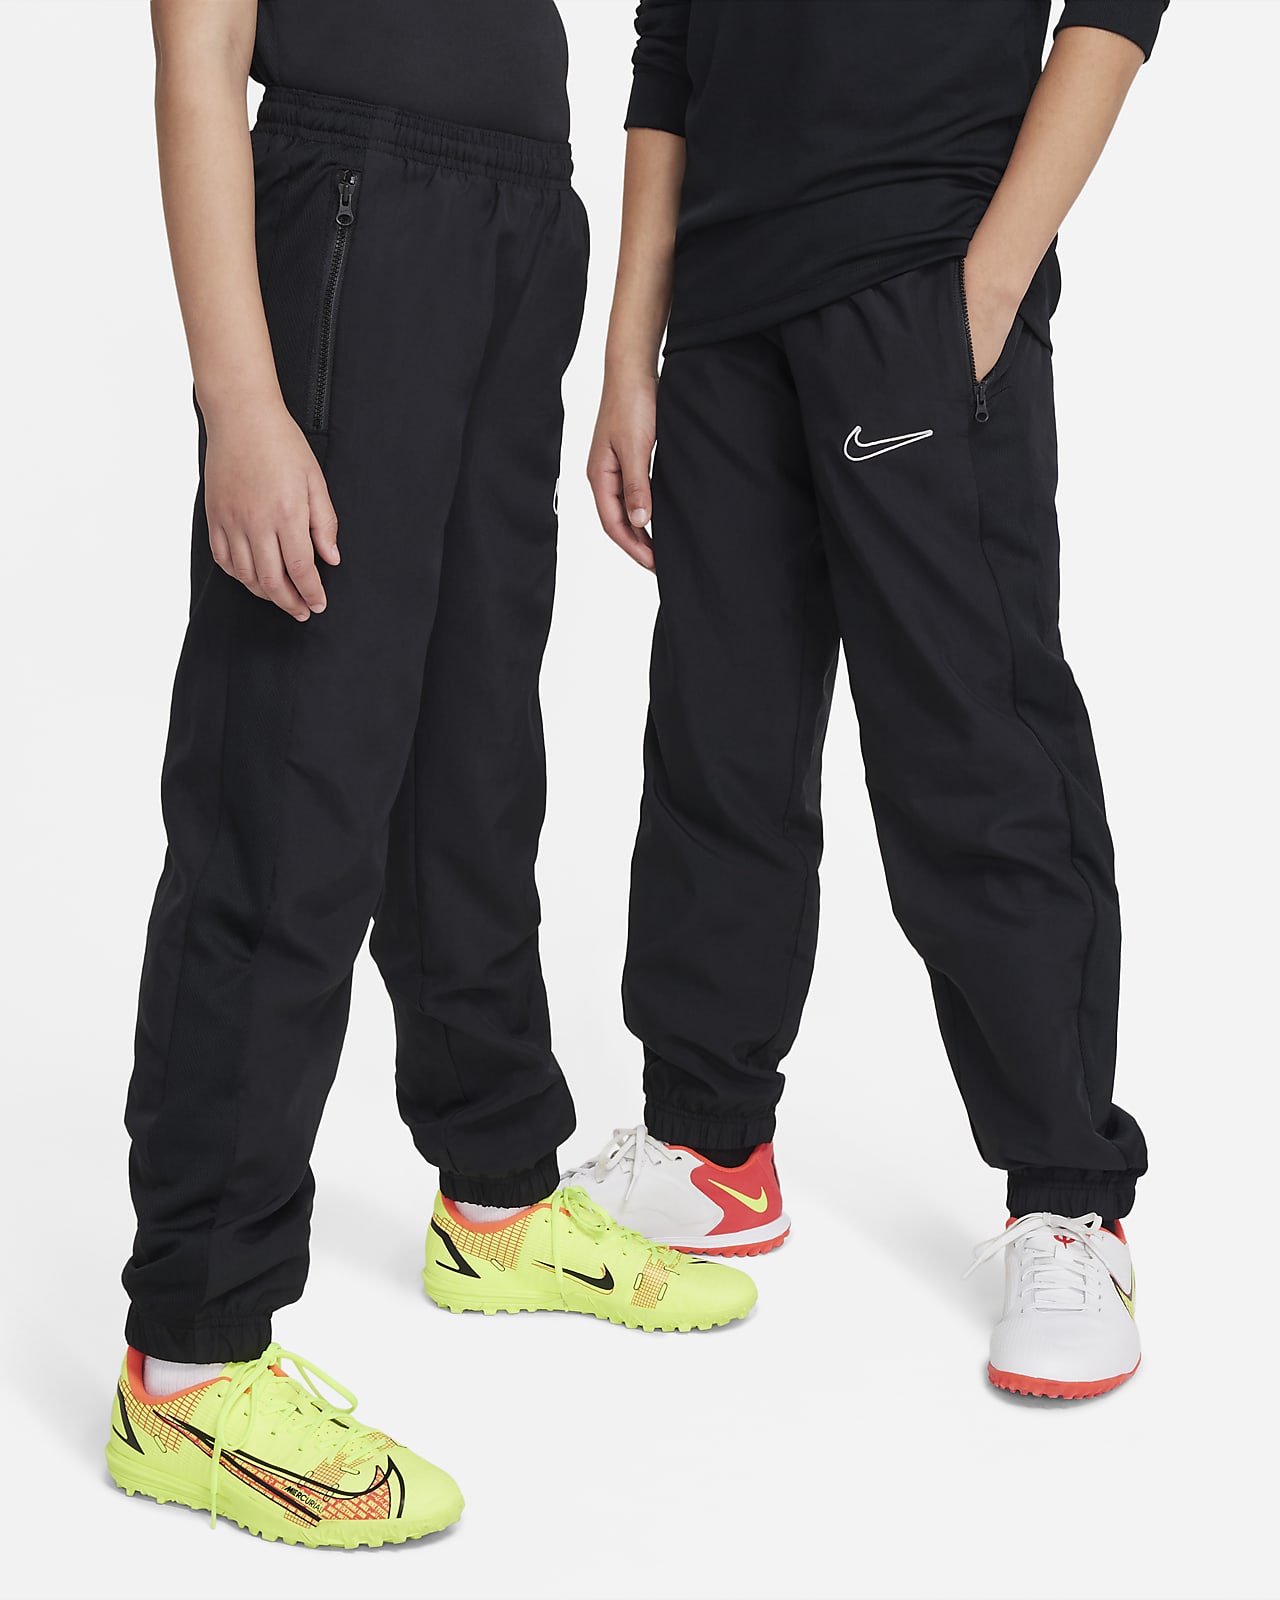 Nike Dri-fit, Large  Nike dri fit, Pants for women, Dri fit